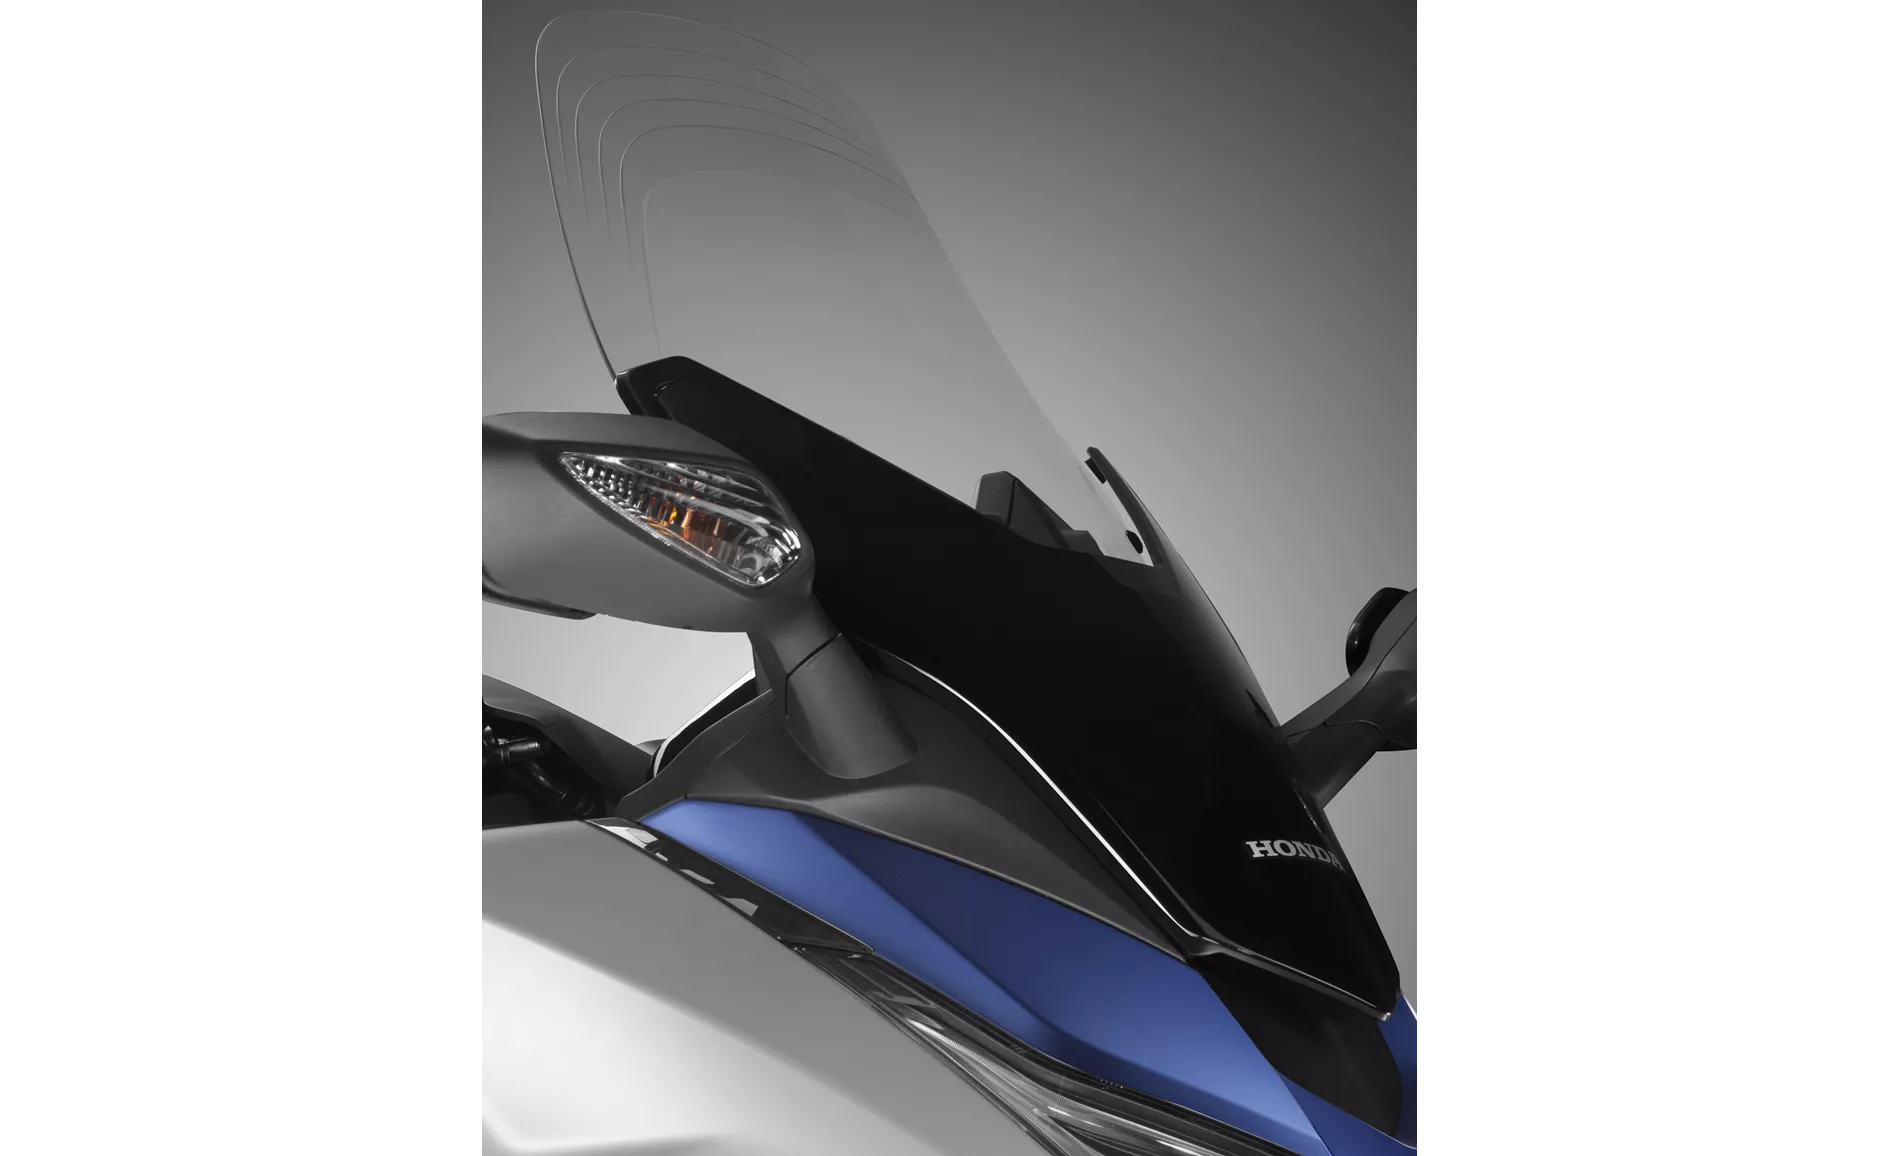 Honda Forza 125 2019